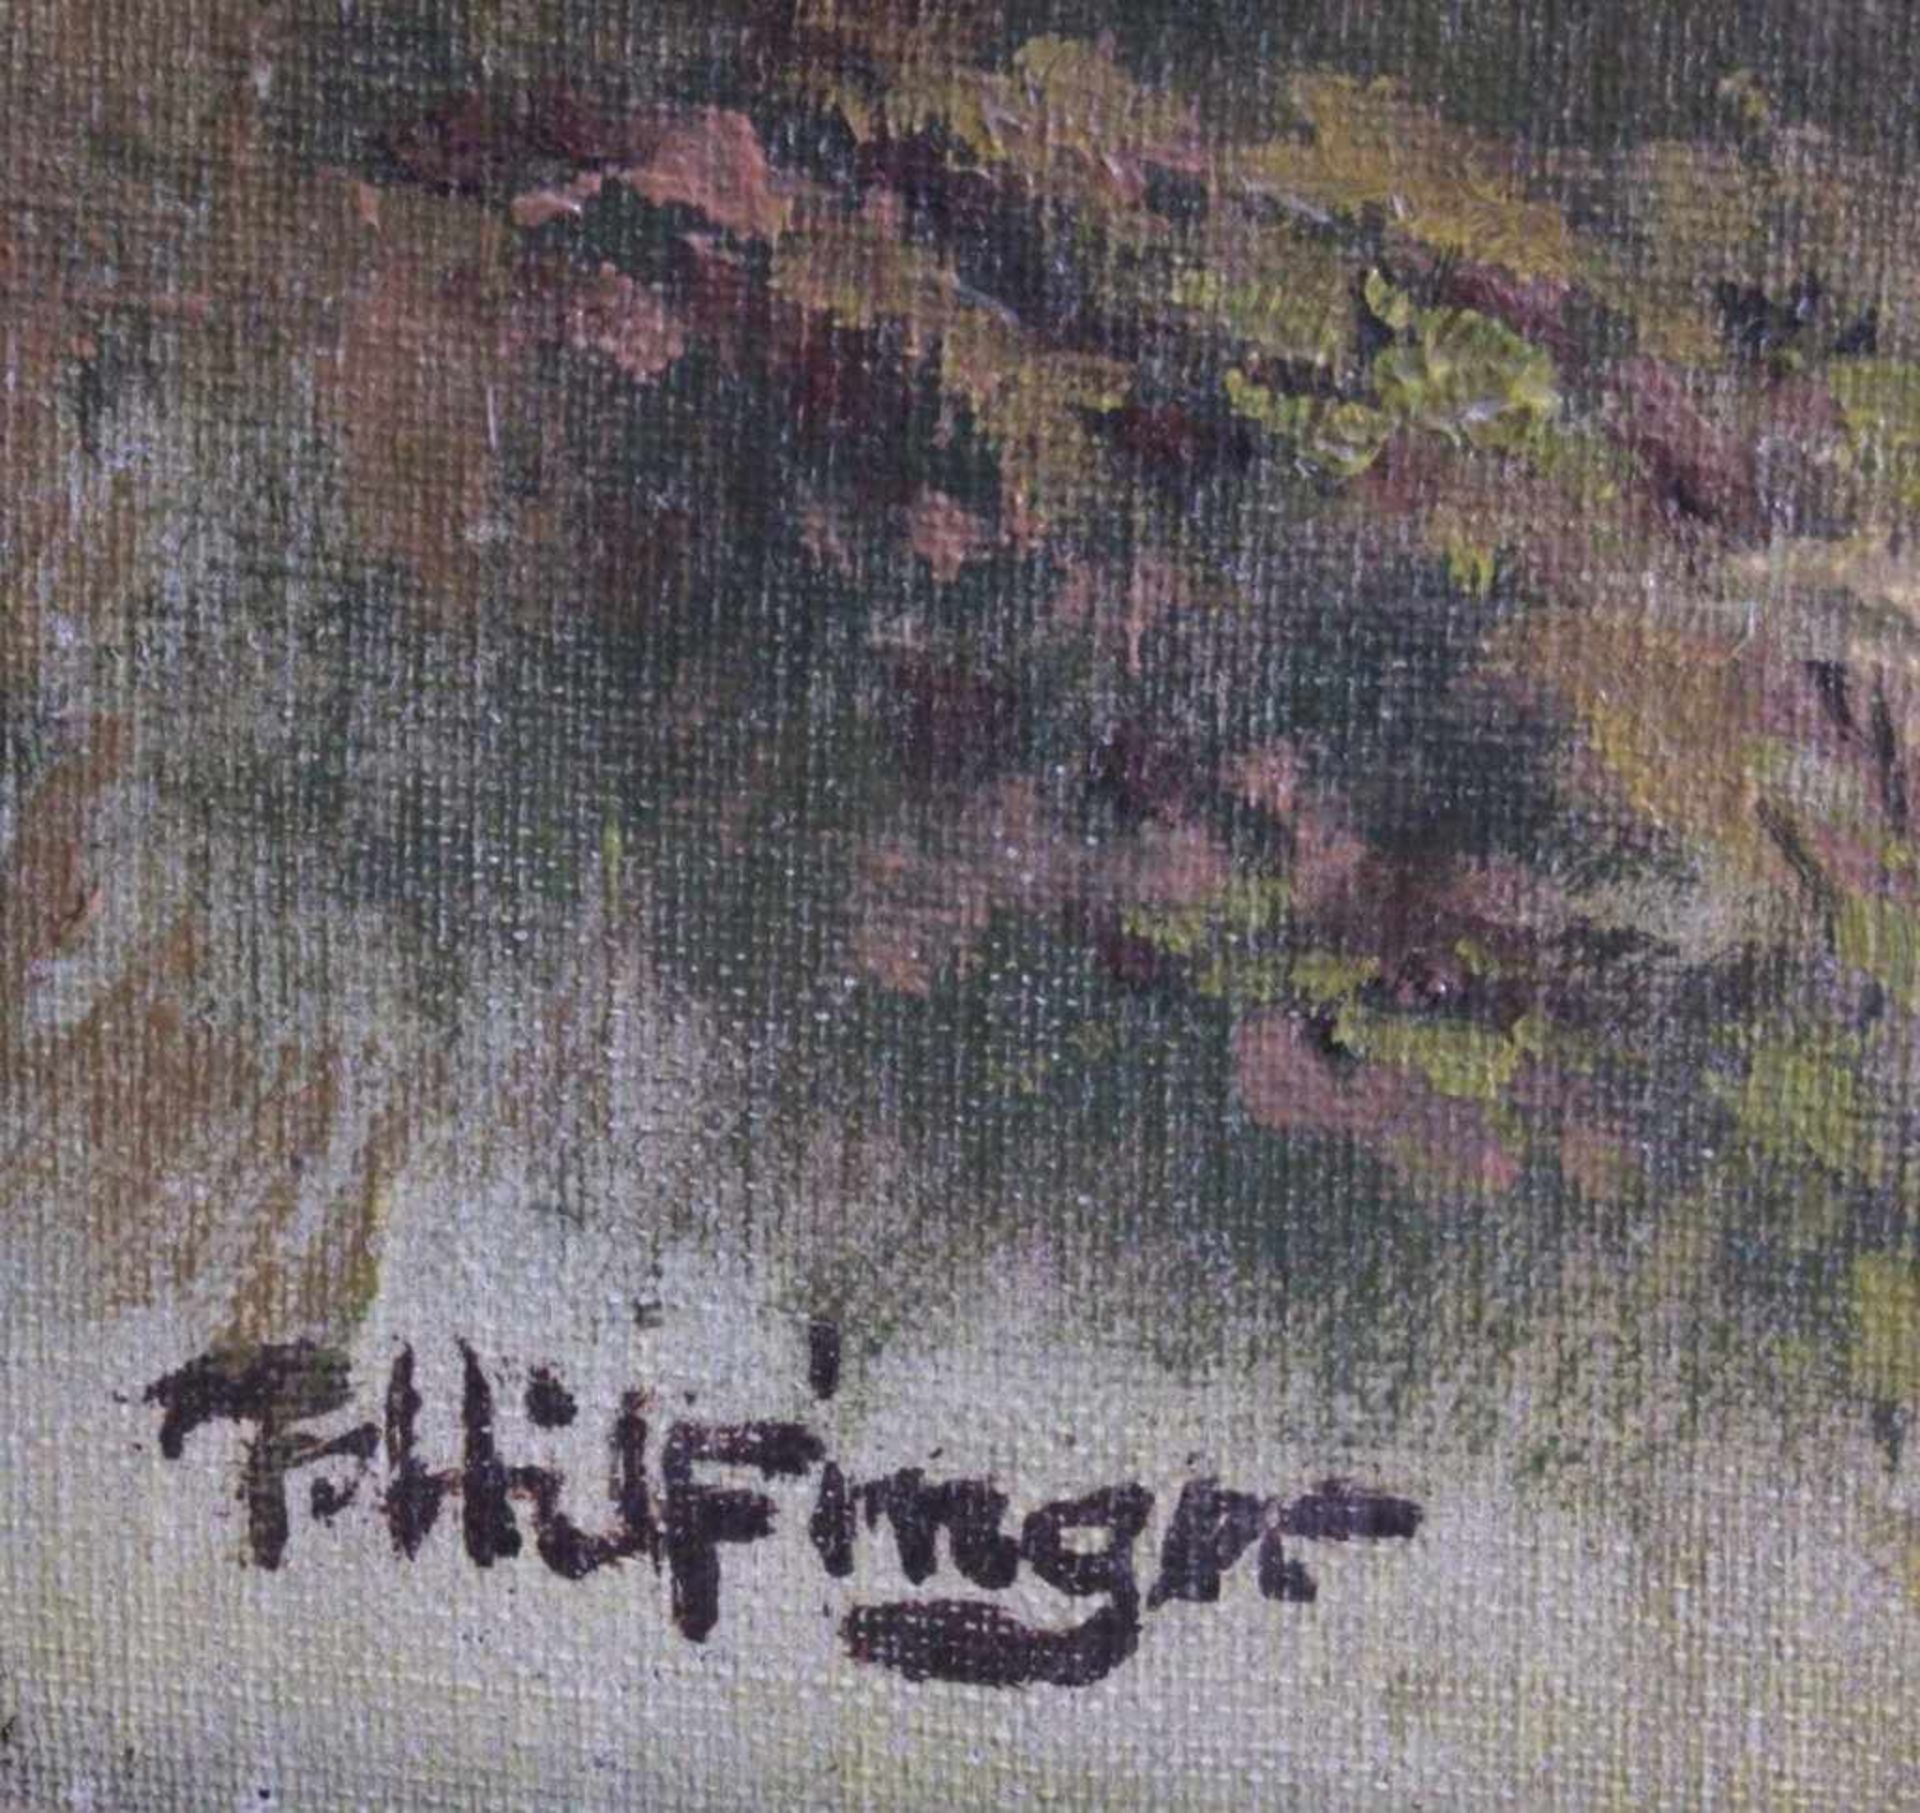 F. Hilfinger ?-?, Sommerliche Landschaft mit KircheÖl auf Leinwand gemalt, unten links signiert, - Bild 3 aus 4